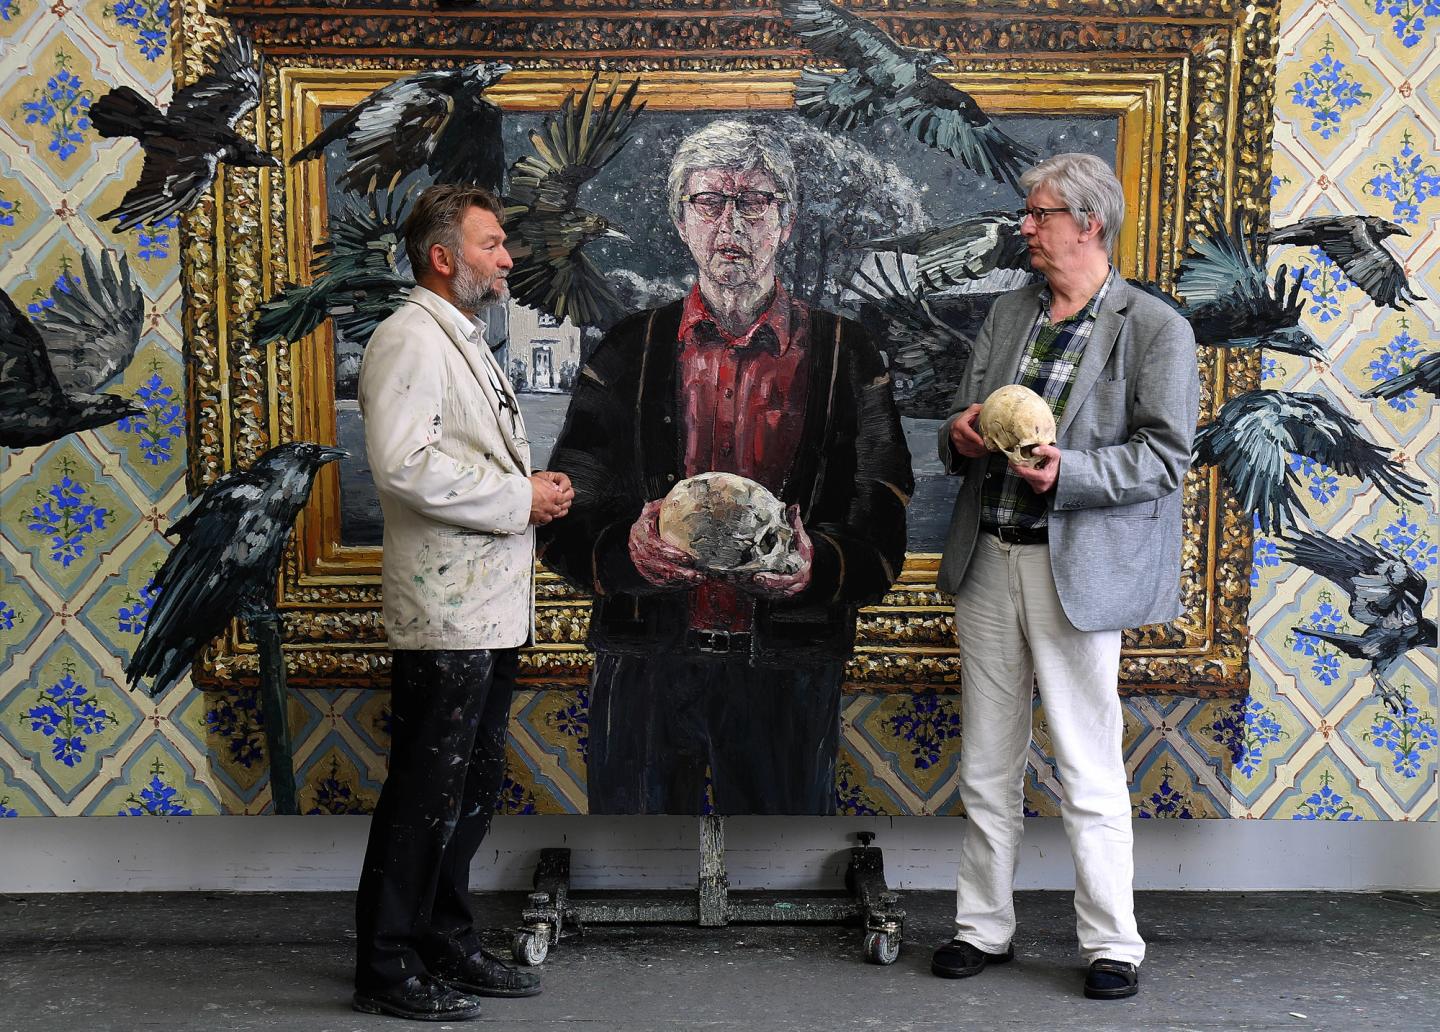 Tor-Arne Moen og Hans Herbjørnsrud fotografert foran maleriet "Mentorens rite"